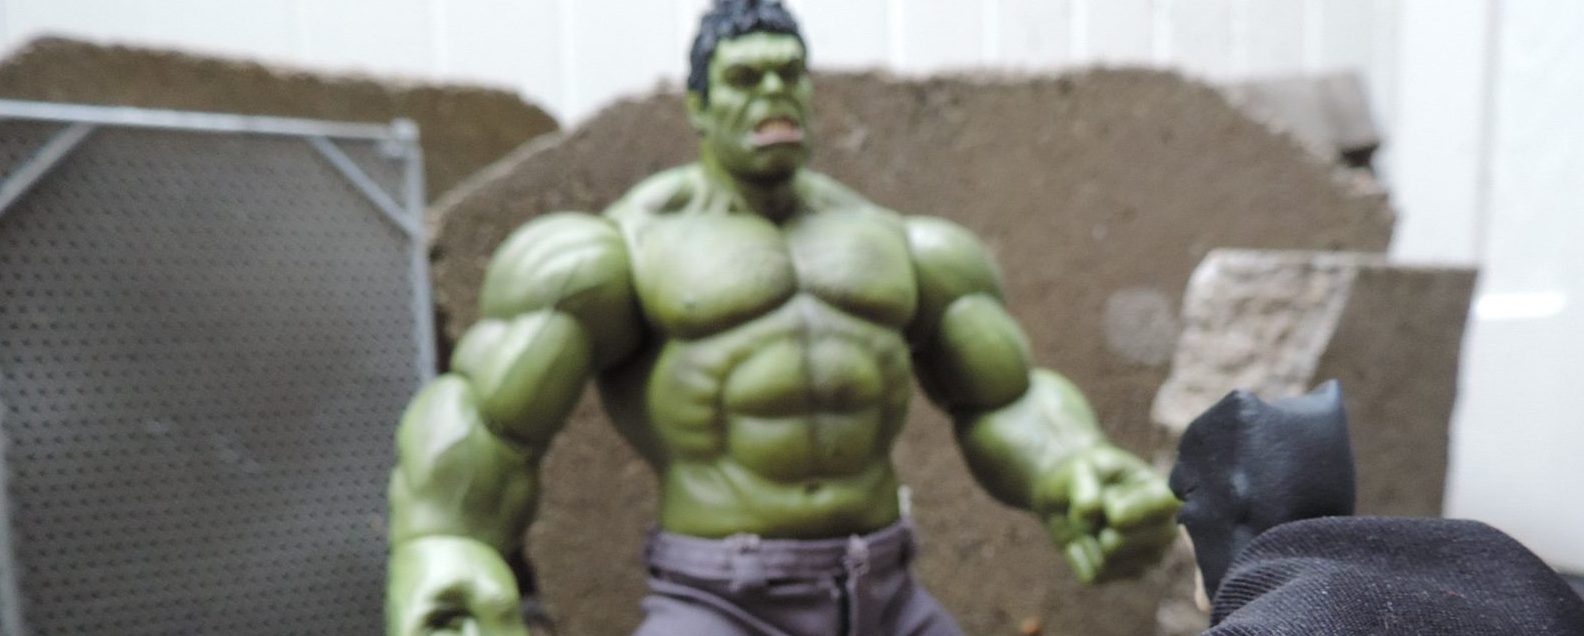 Hot Toys Ko Mini Hulk Figure